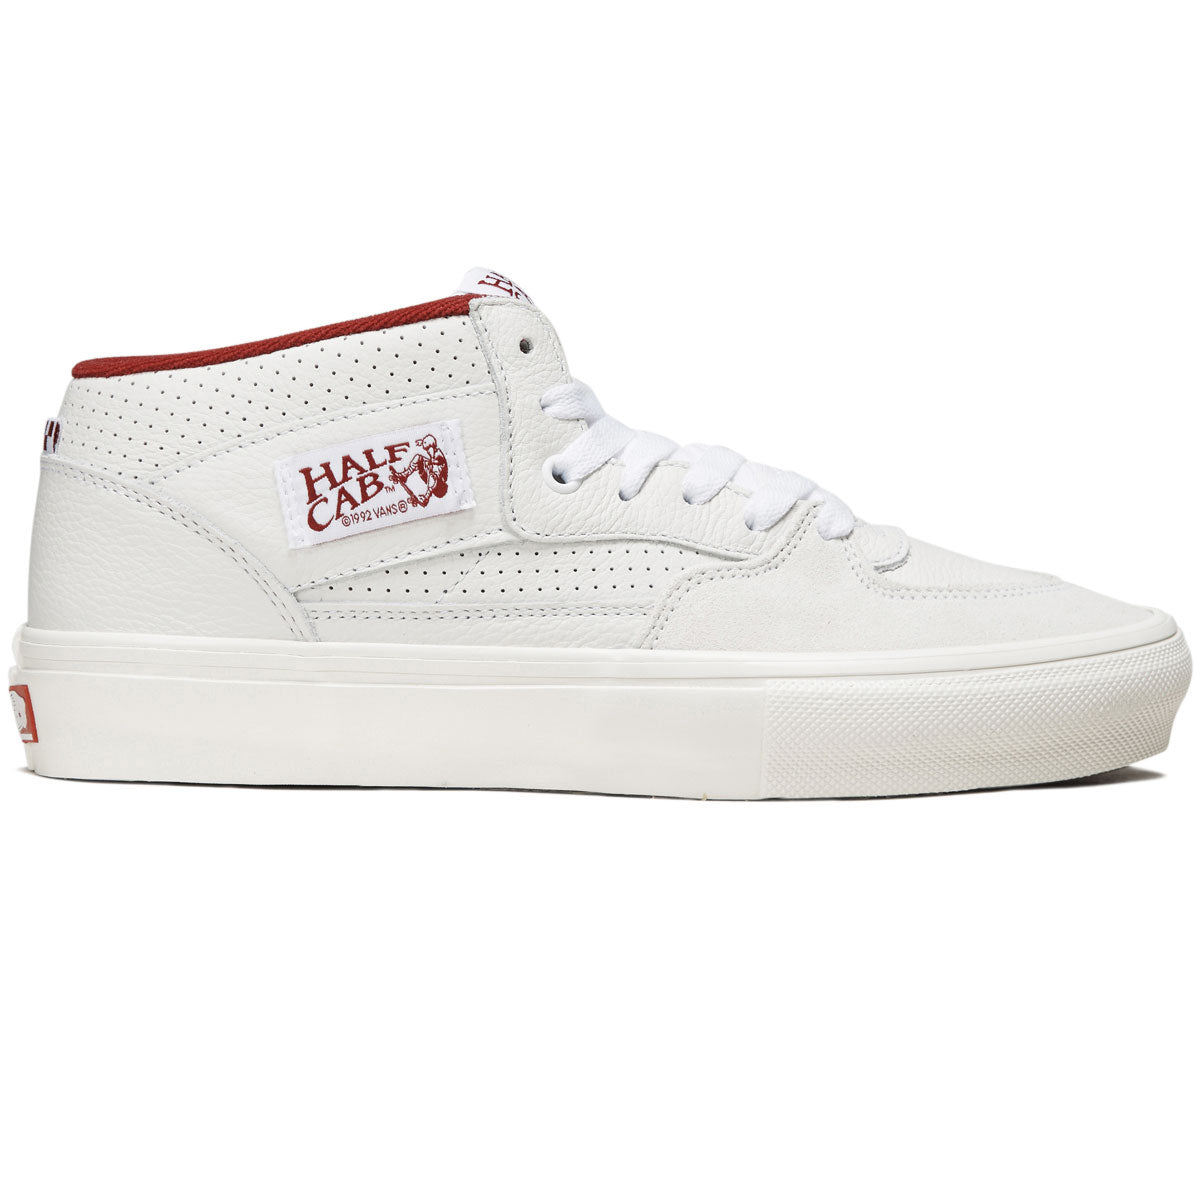 Vans Skate Half Cab Shoes - Vintage Sport White/Red image 1